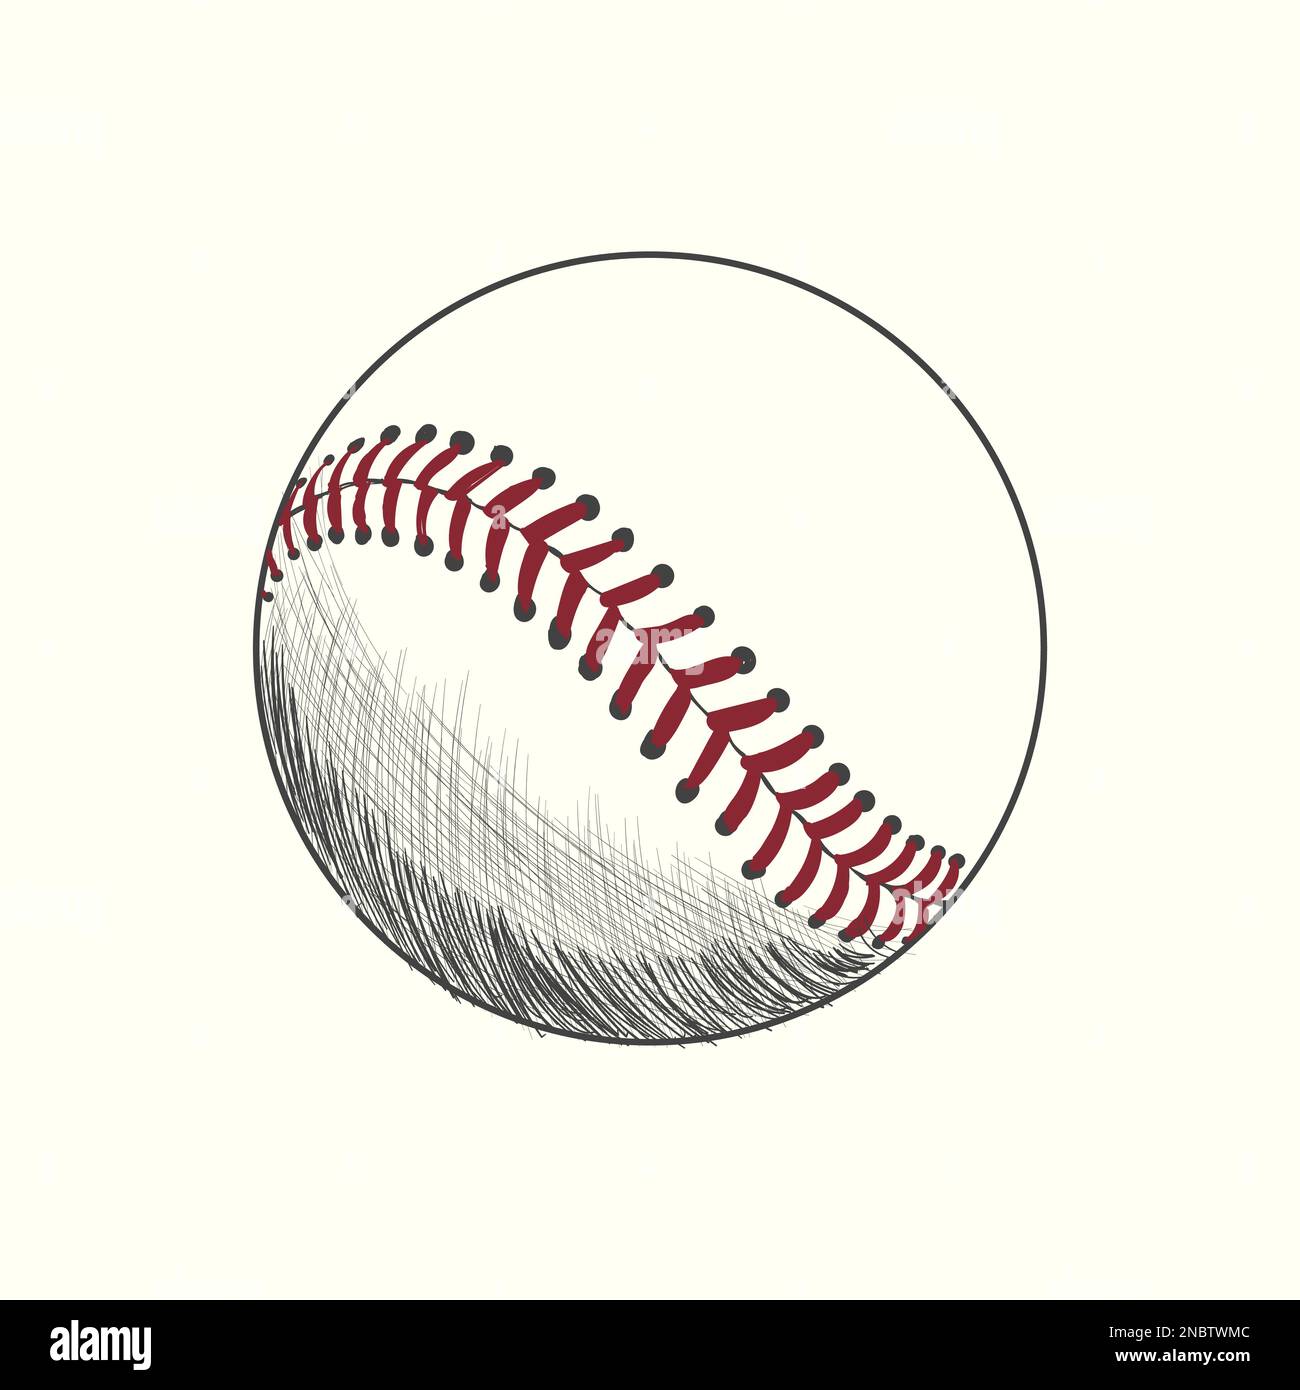 Sports Series Sketchy Pencil Drawing Baseball Stock Illustration